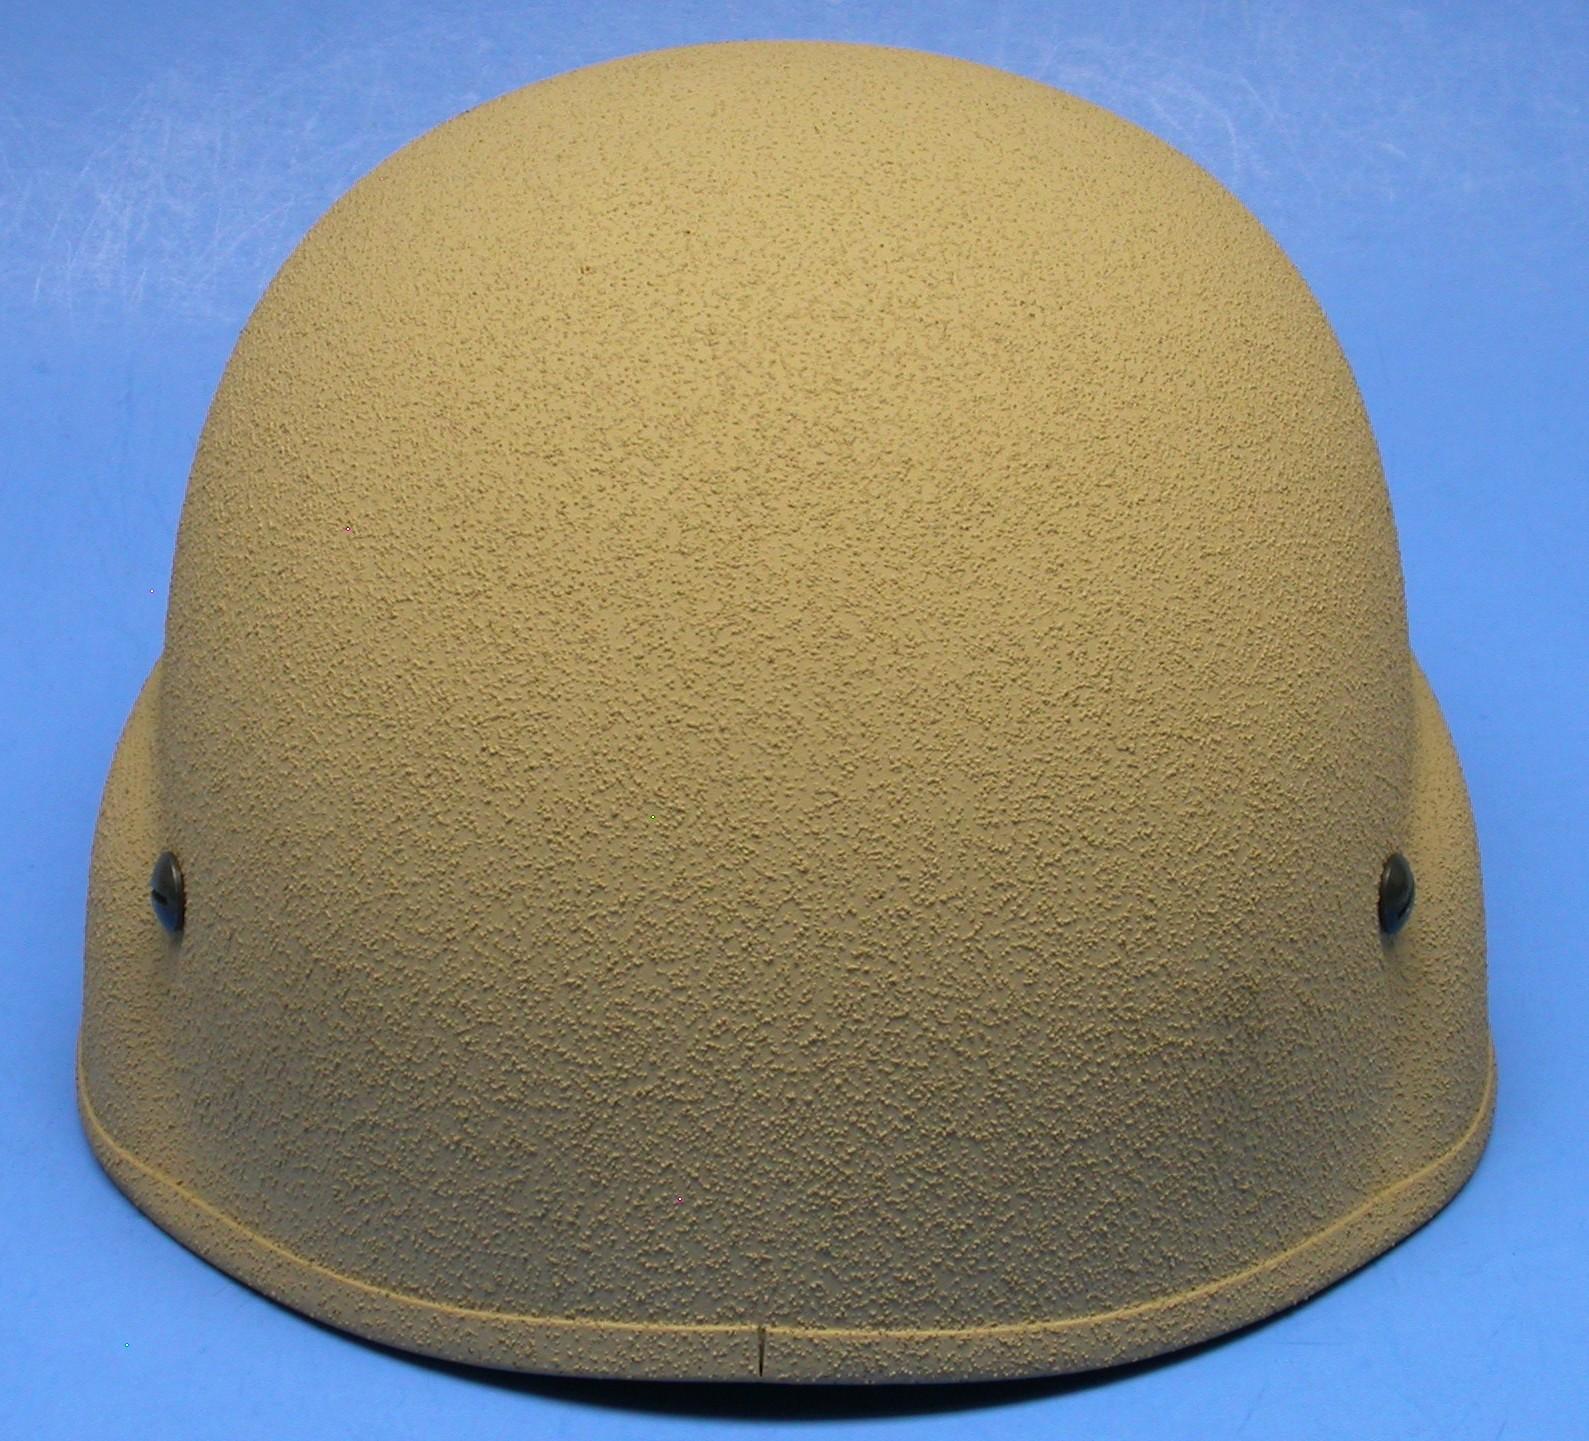 US Military TBHII (Tactical Ballistic Helmet II) Helmet (MJJ)